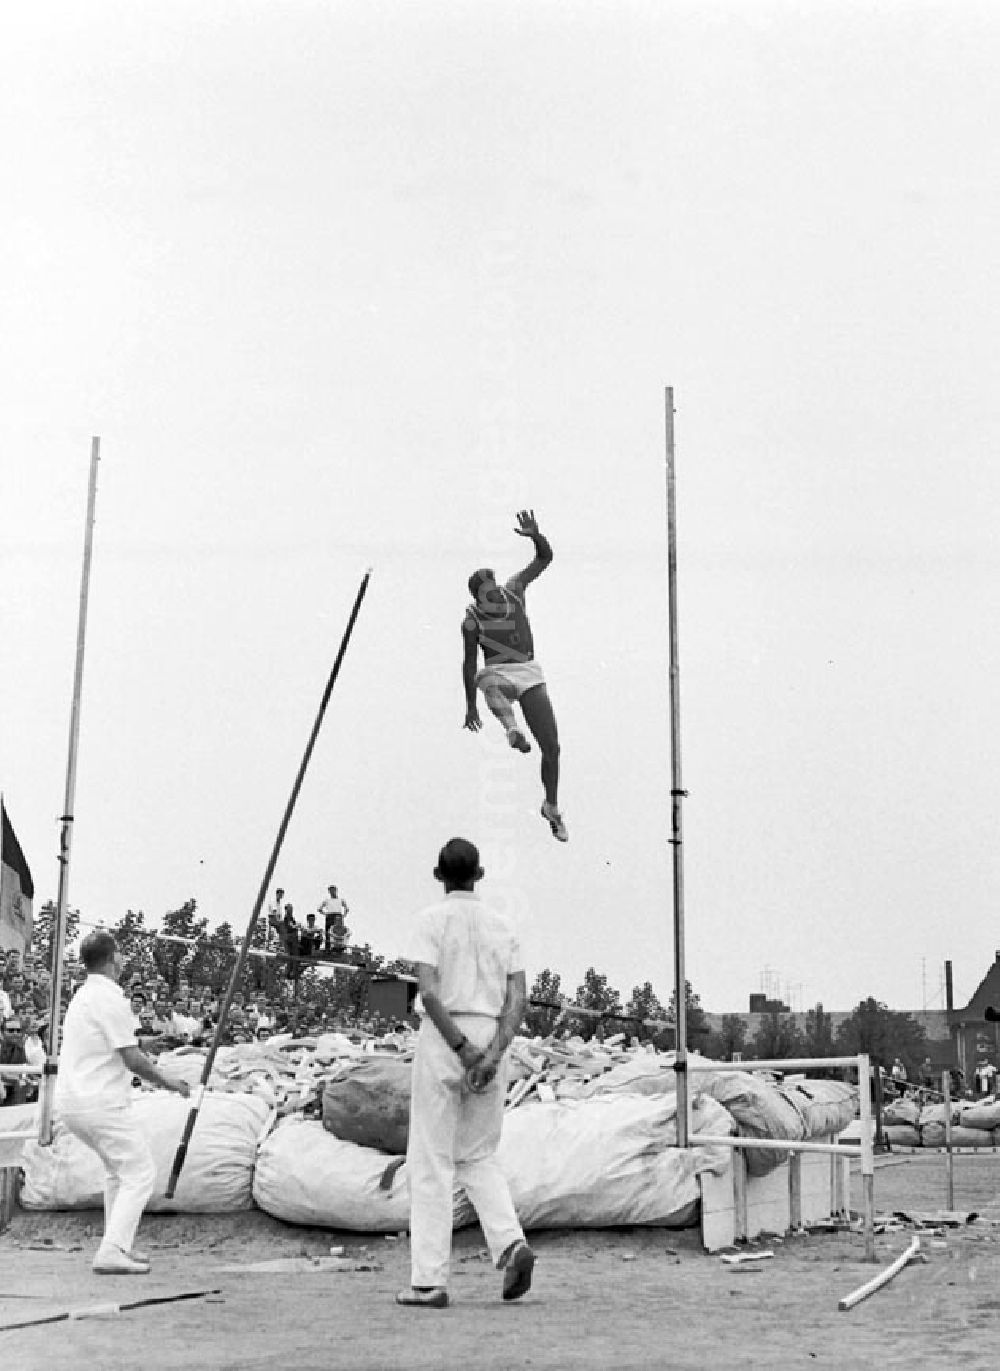 GDR image archive: Halle - 27.-30.07.1967 XX. Leichtathletik Meisterschaft Halle Max Klauß reißt bei 4.70m (1